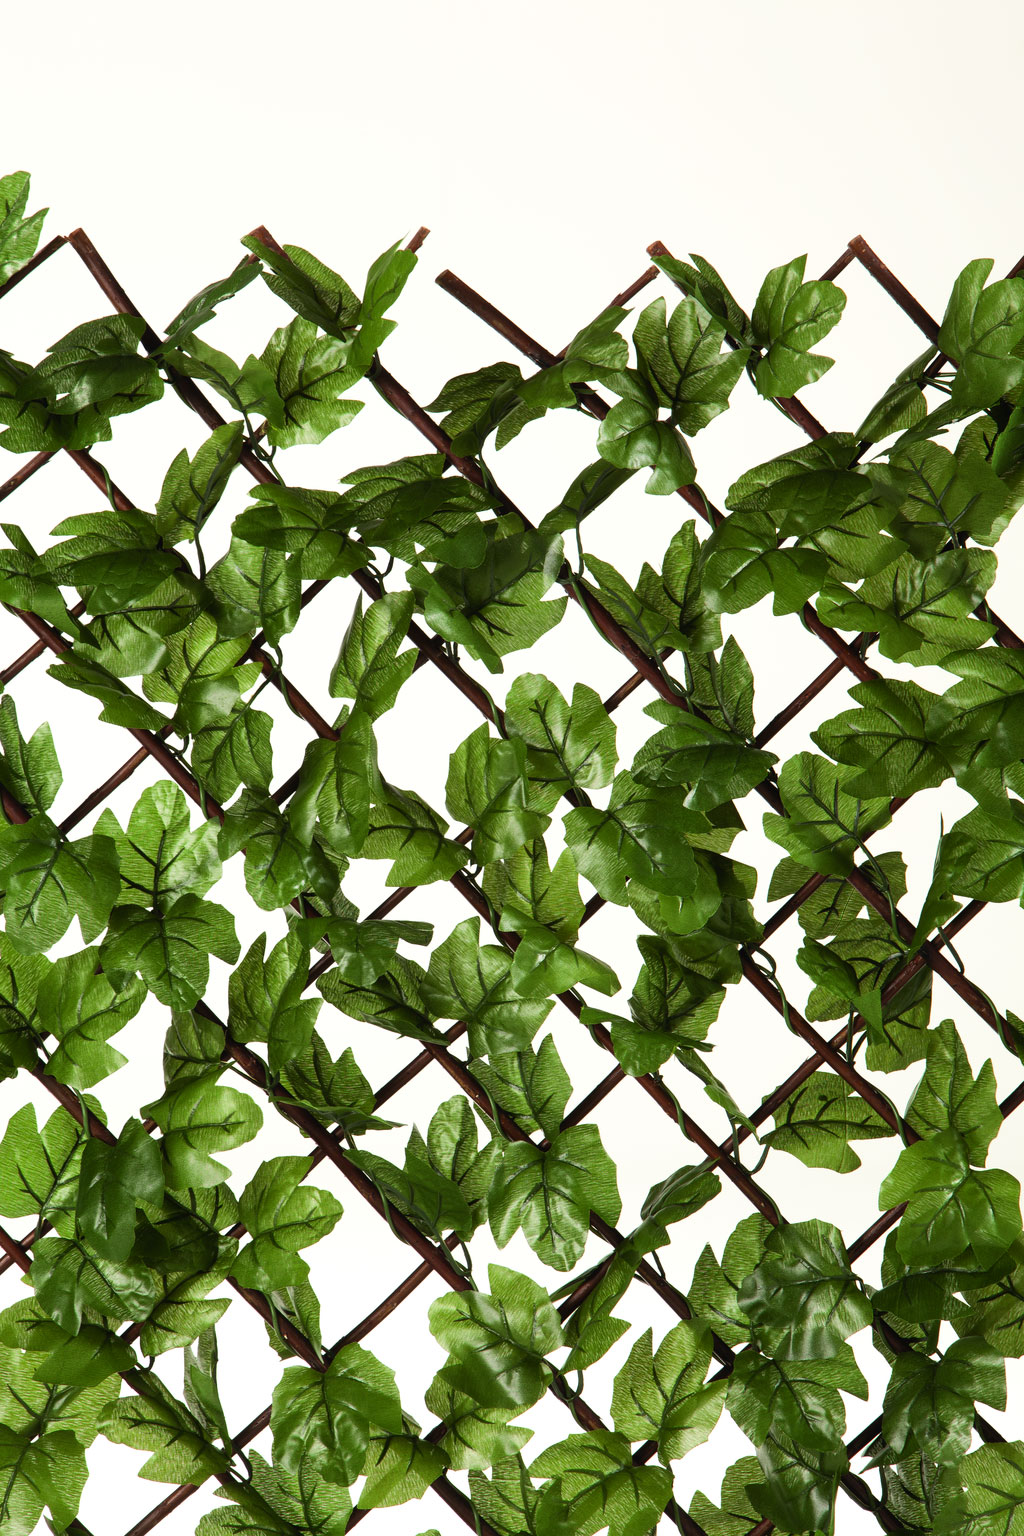 Apácarács mű borostyán levelekkel Greenly 1x2 m